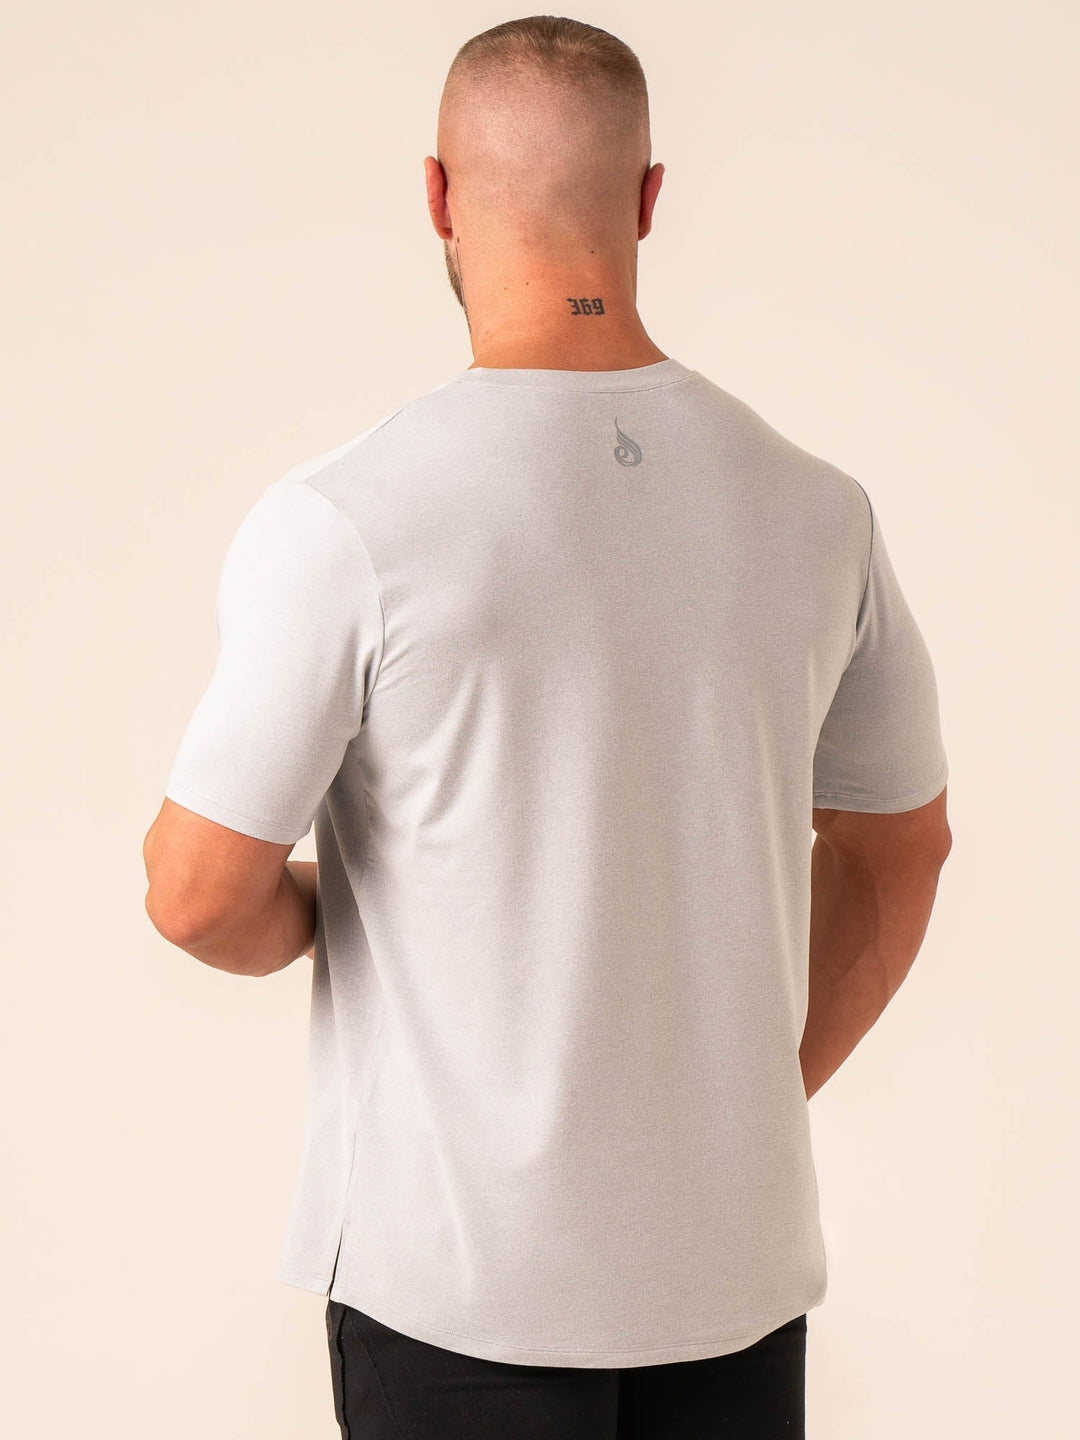 Soft Tech T-Shirt - Grey Marl Clothing Ryderwear 